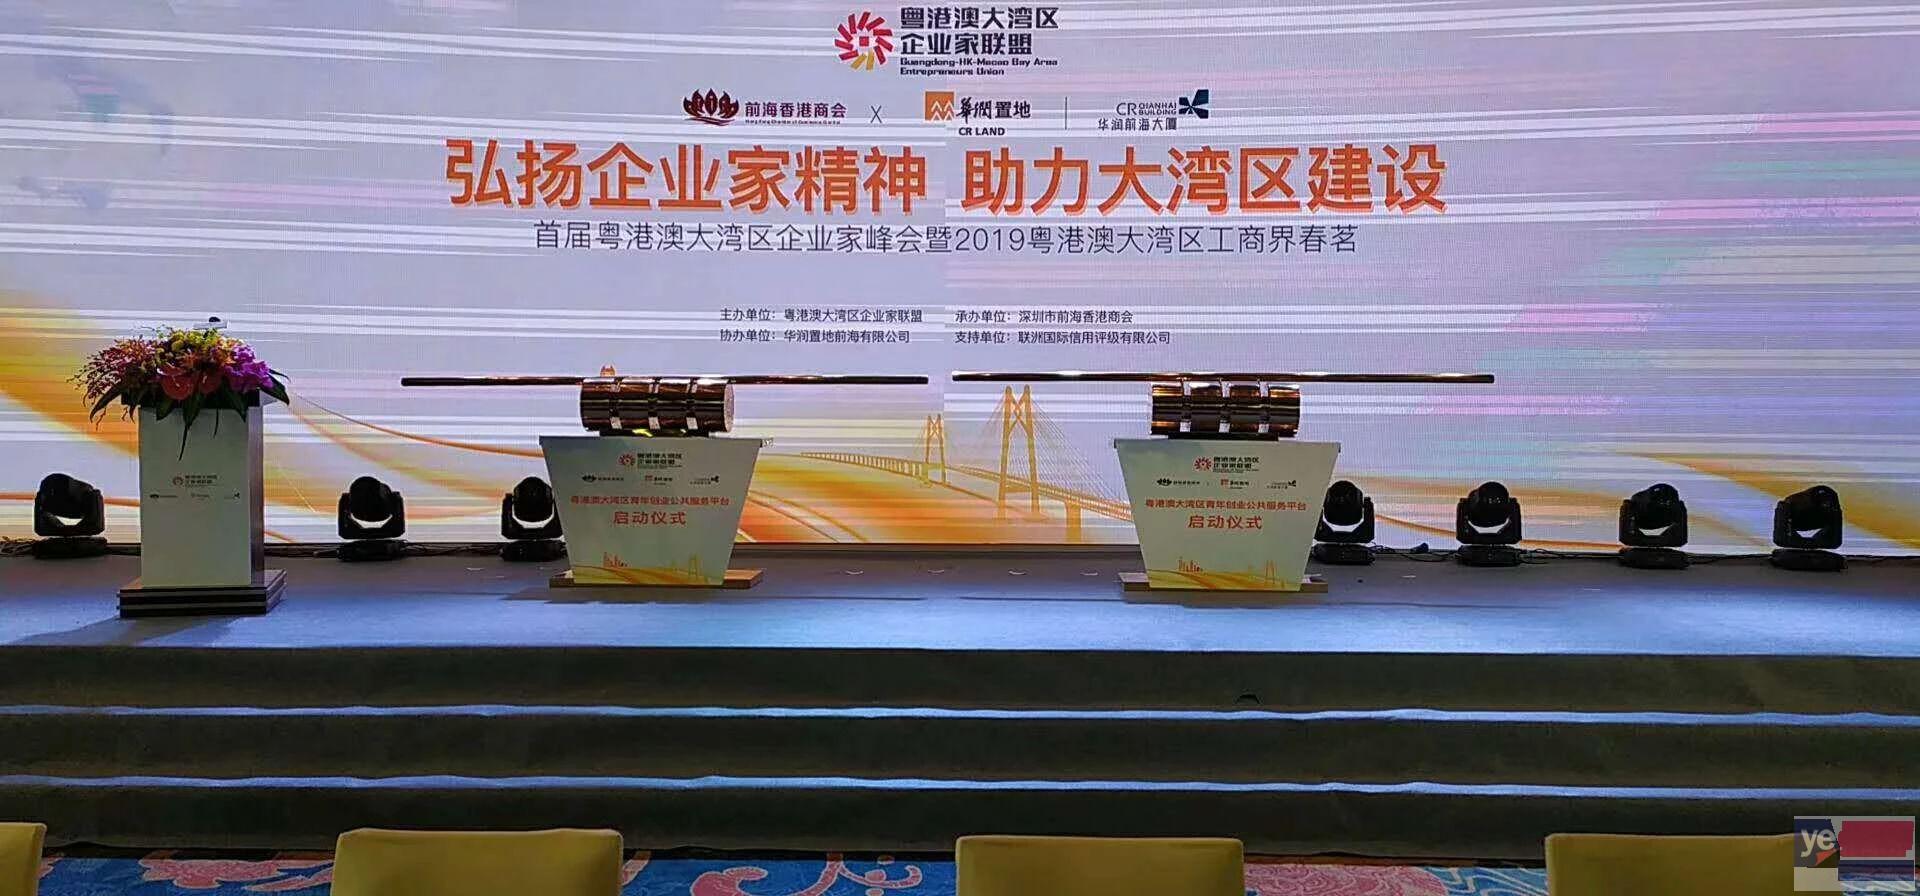 广州开业启动道具庆典仪式剪彩柱流金沙画轴推杆多米诺租赁